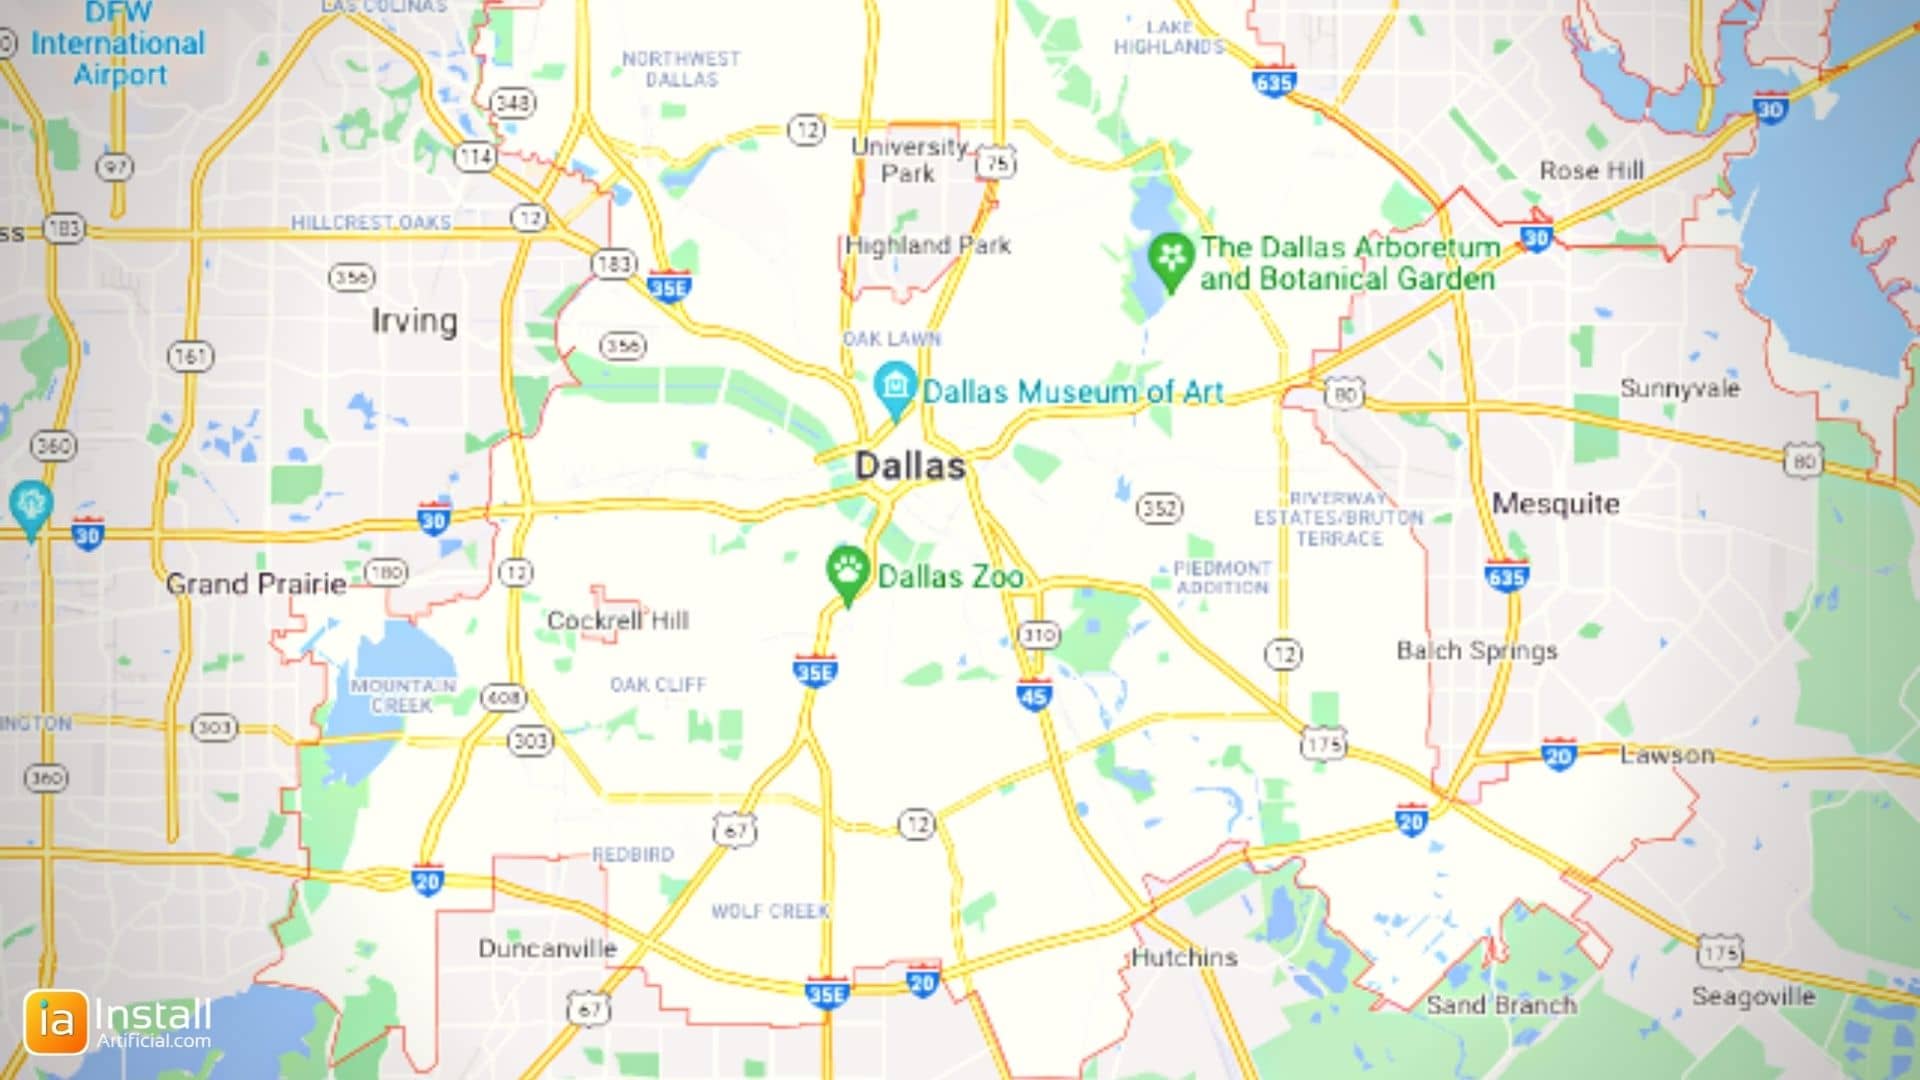 InstallArtificial Location Map - Dallas Texas